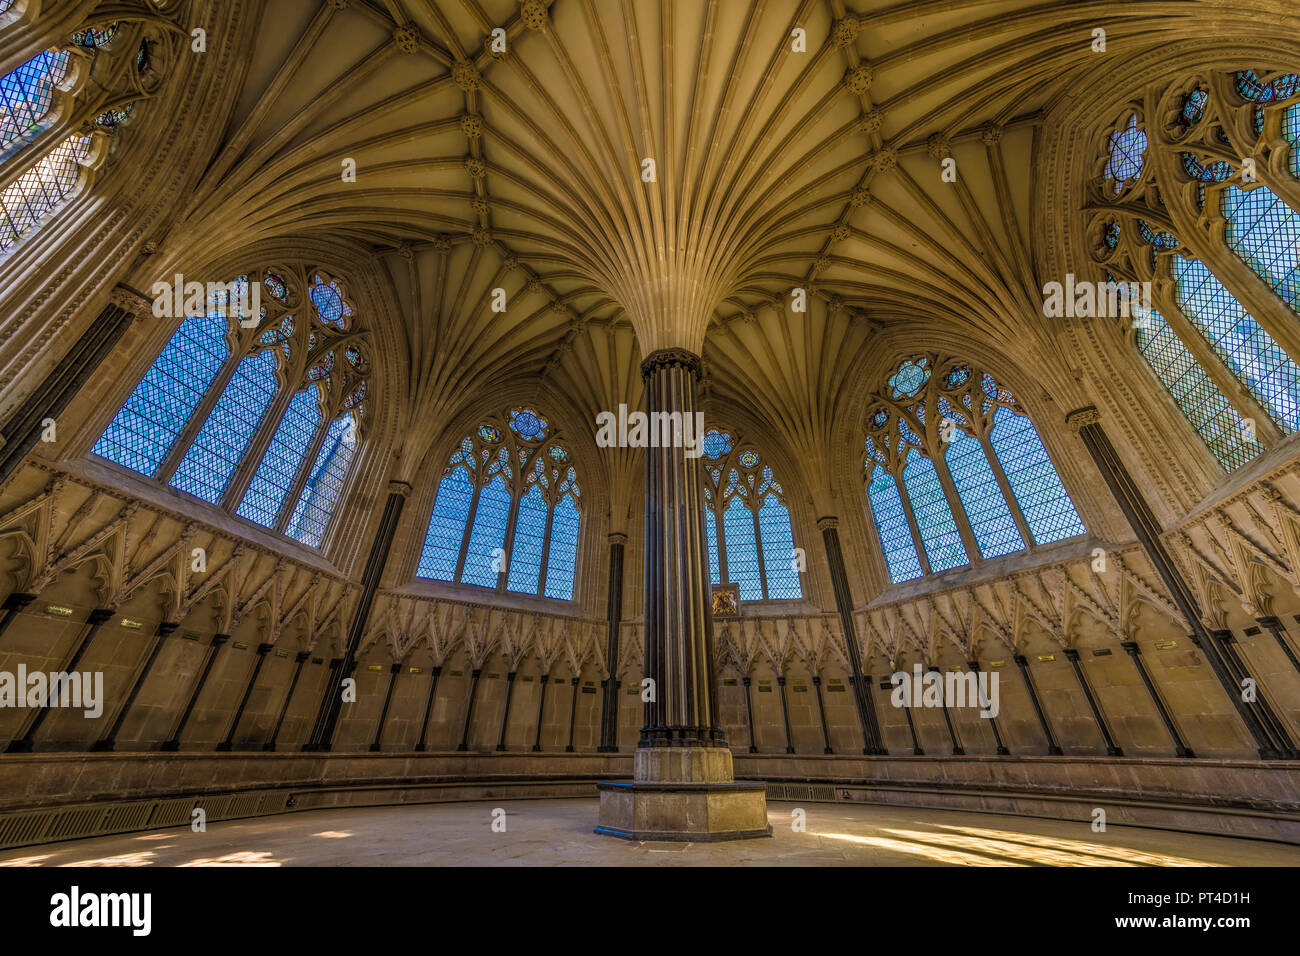 El precioso techo abovedado de estilo gótico de la Sala Capitular de la Catedral de Wells, Somerset. Foto de stock